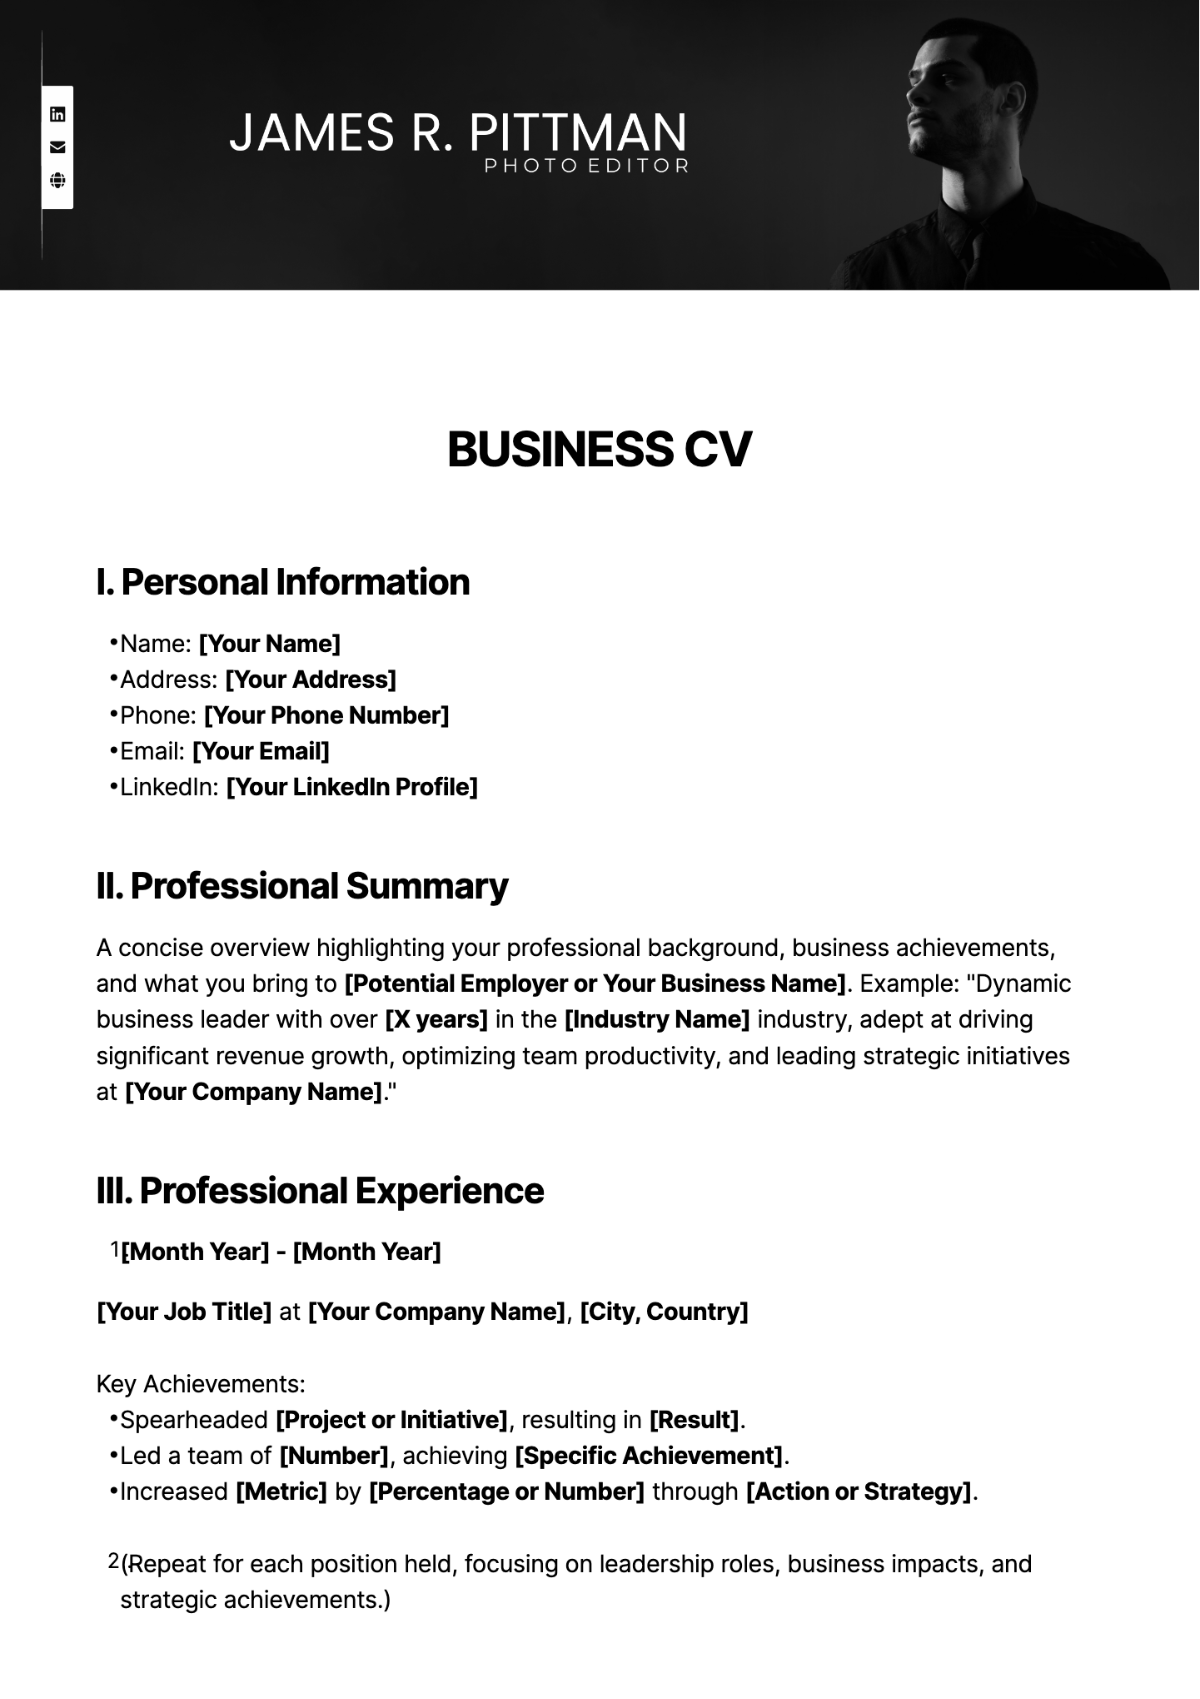 Business CV Template